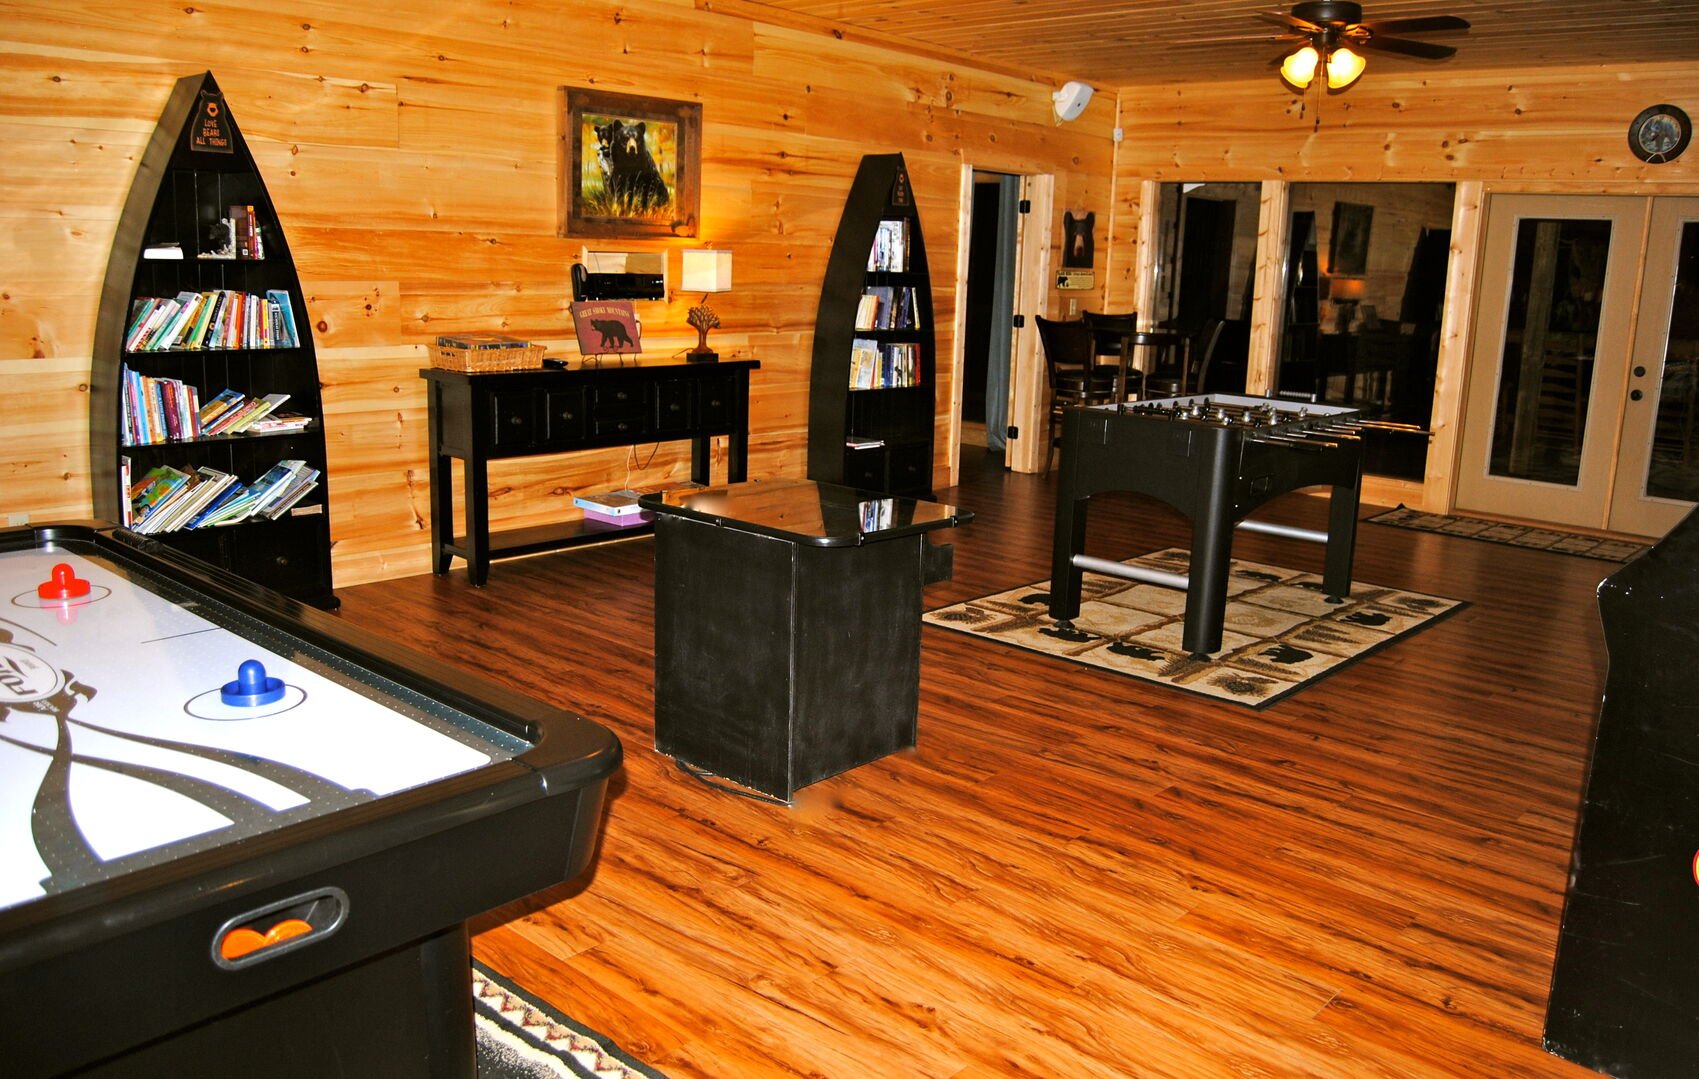 Image of Game Room in Gatlinburg Mansion.